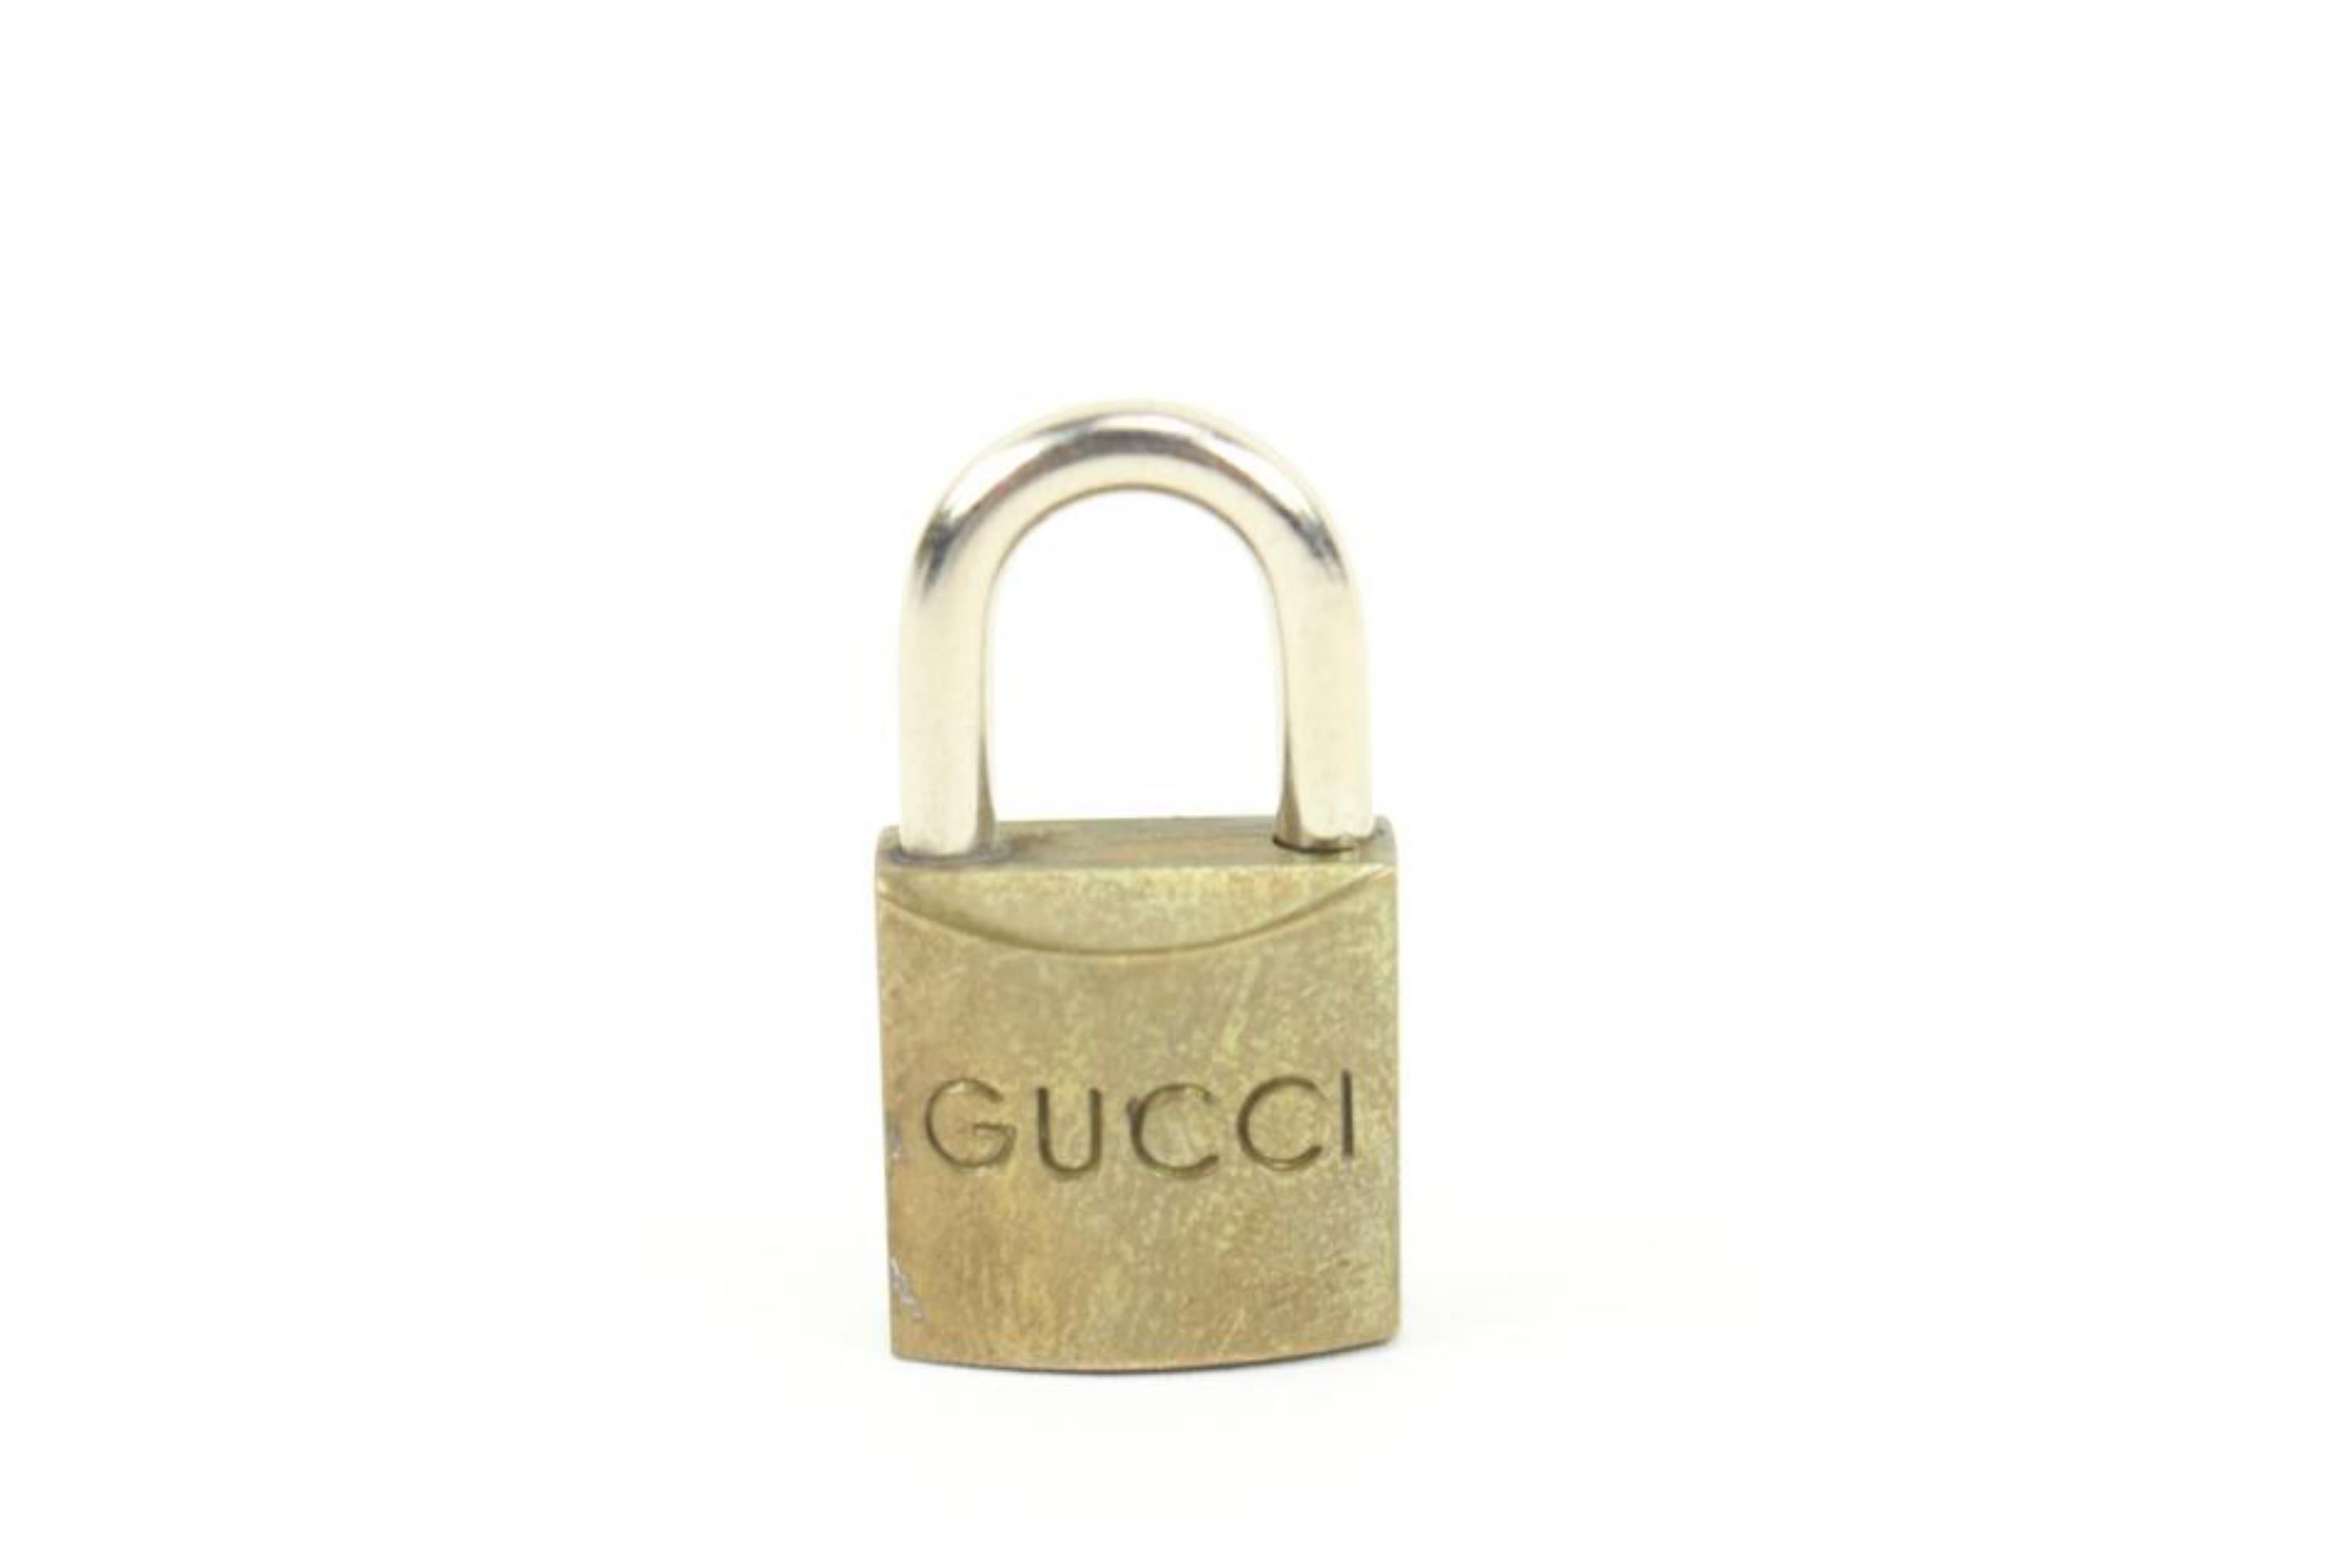 Gucci Messing GG Schloss und Schlüssel Vorhängeschloss Tasche Charme Cadena 11g222s
Maße: Länge:  .6